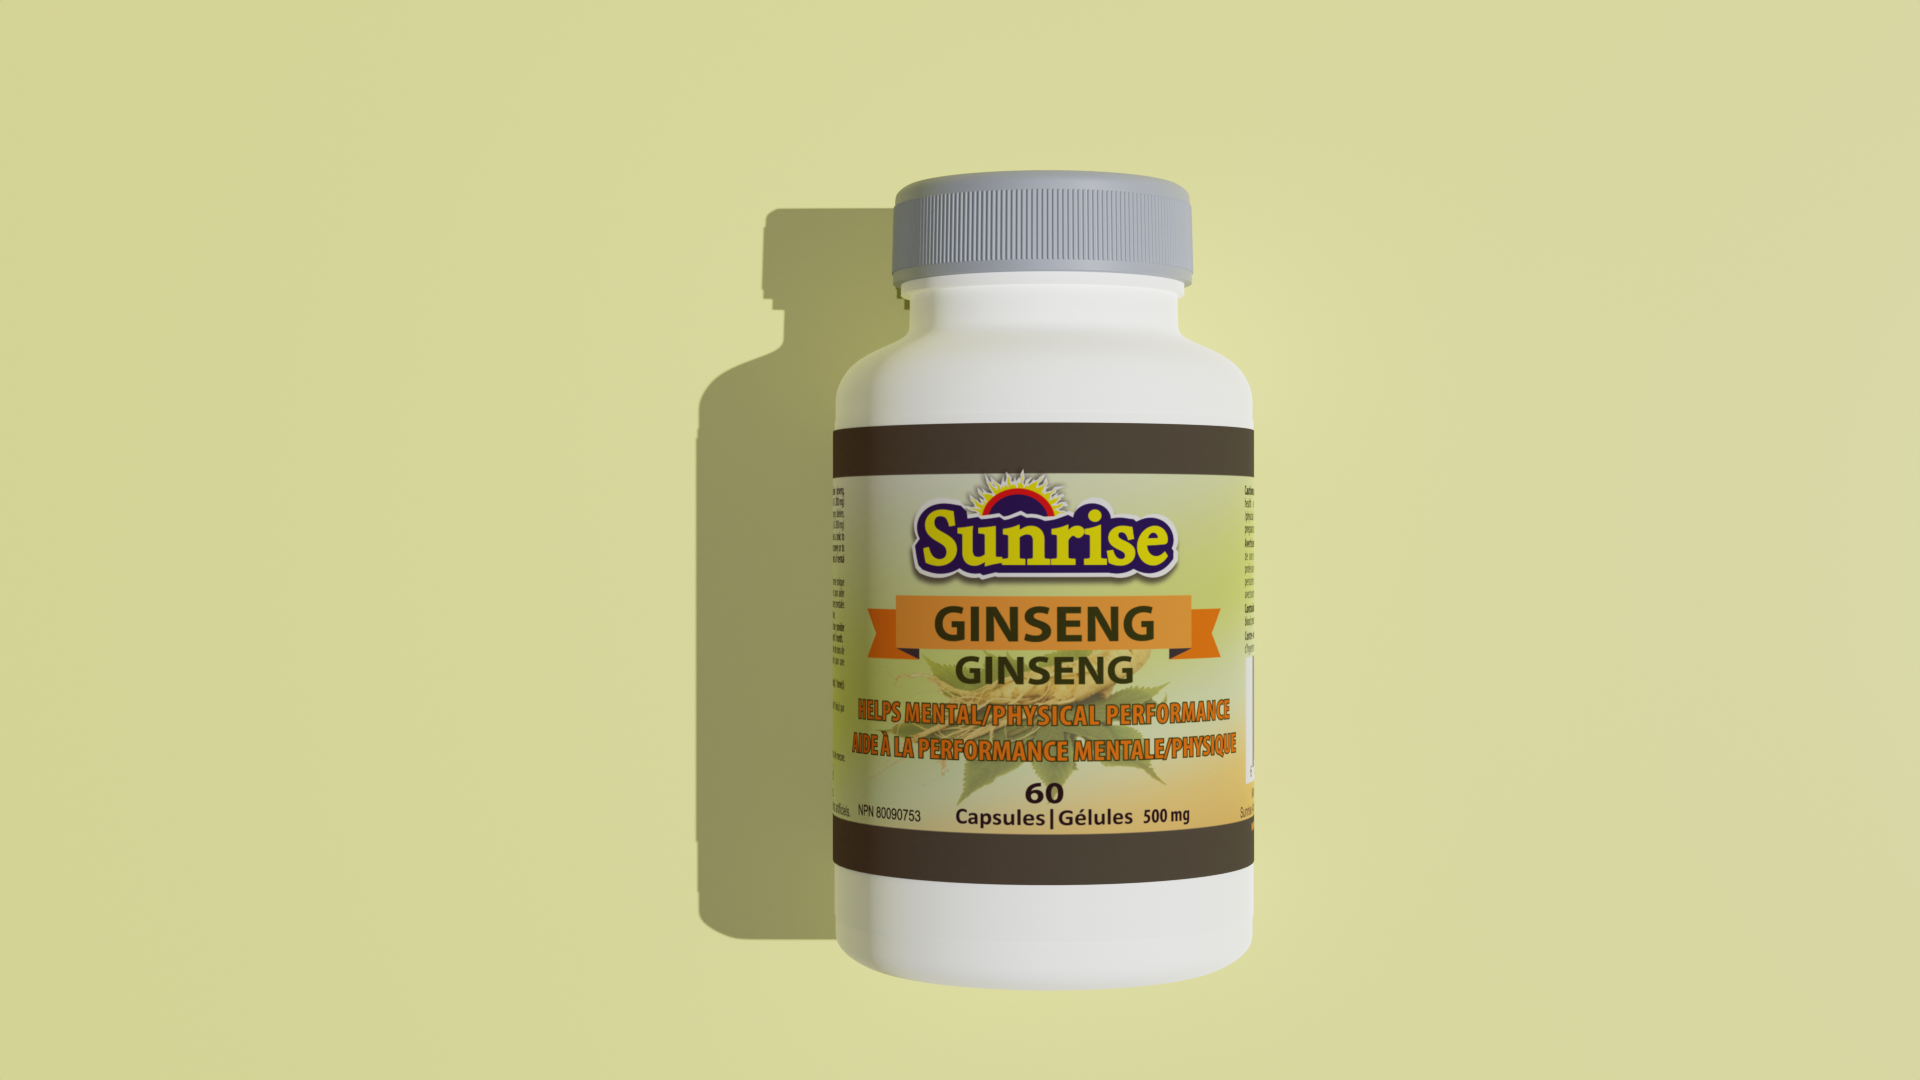 Sunrise Ginseng – Capsules